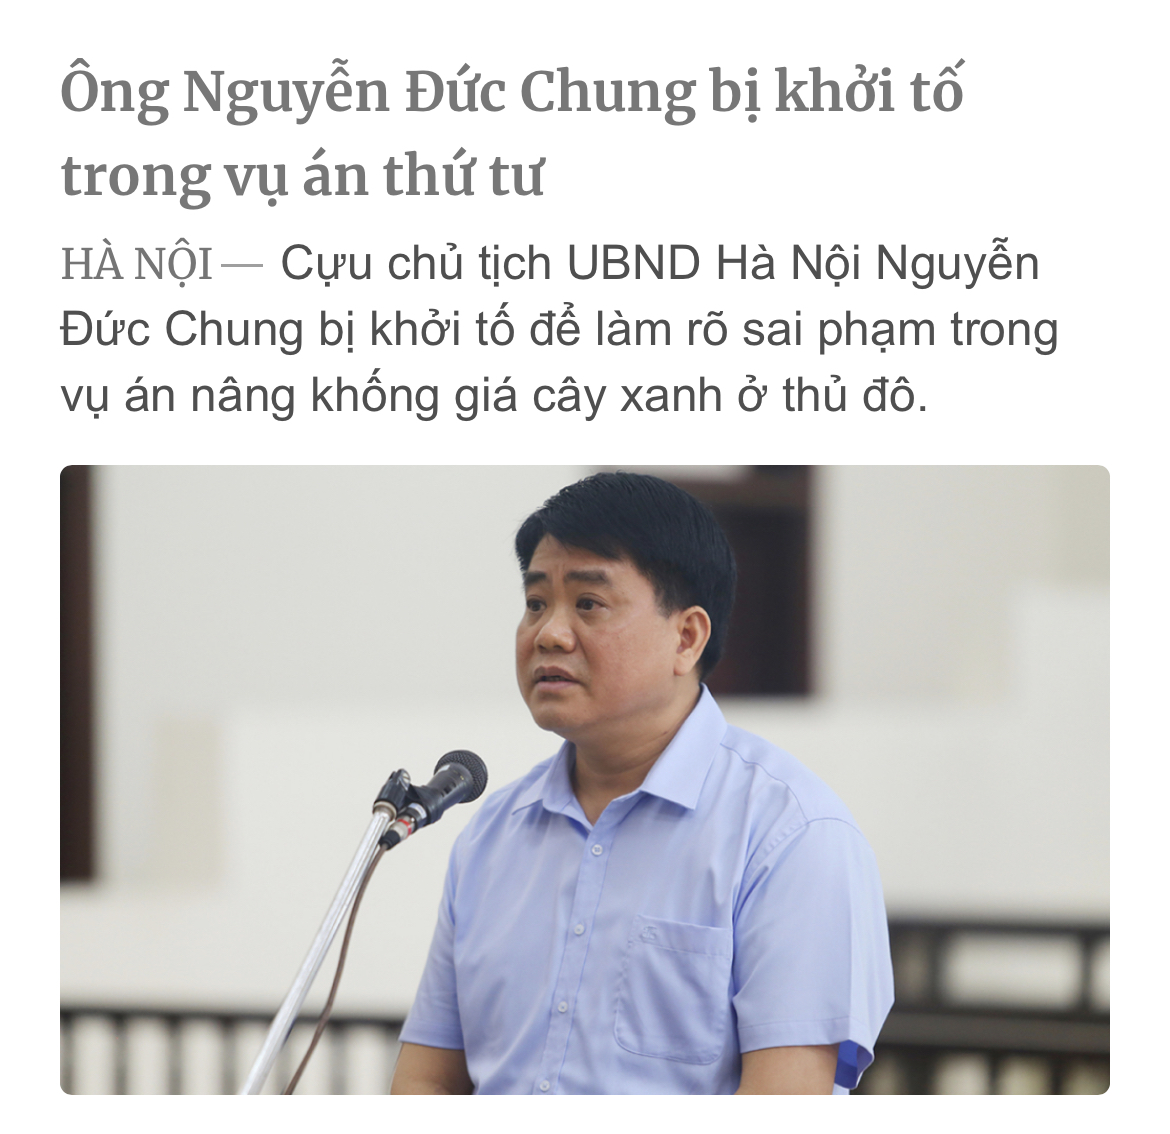 Cựu chủ tịch UBND Hà Nội Nguyễn Đức Chung bị khởi tố để làm rõ sai phạm trong vụ án nâng khống...